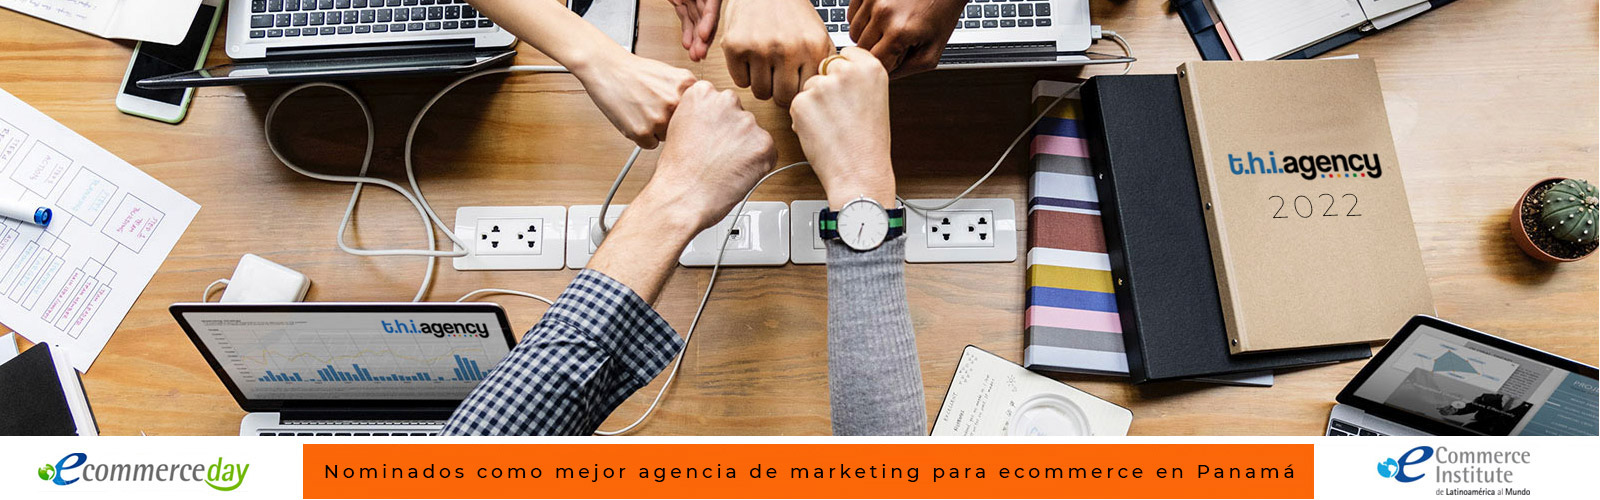 T.h.i.Agency | Soluciones Integrales en Marketing en Colombia, Panamá y Centroamérica.